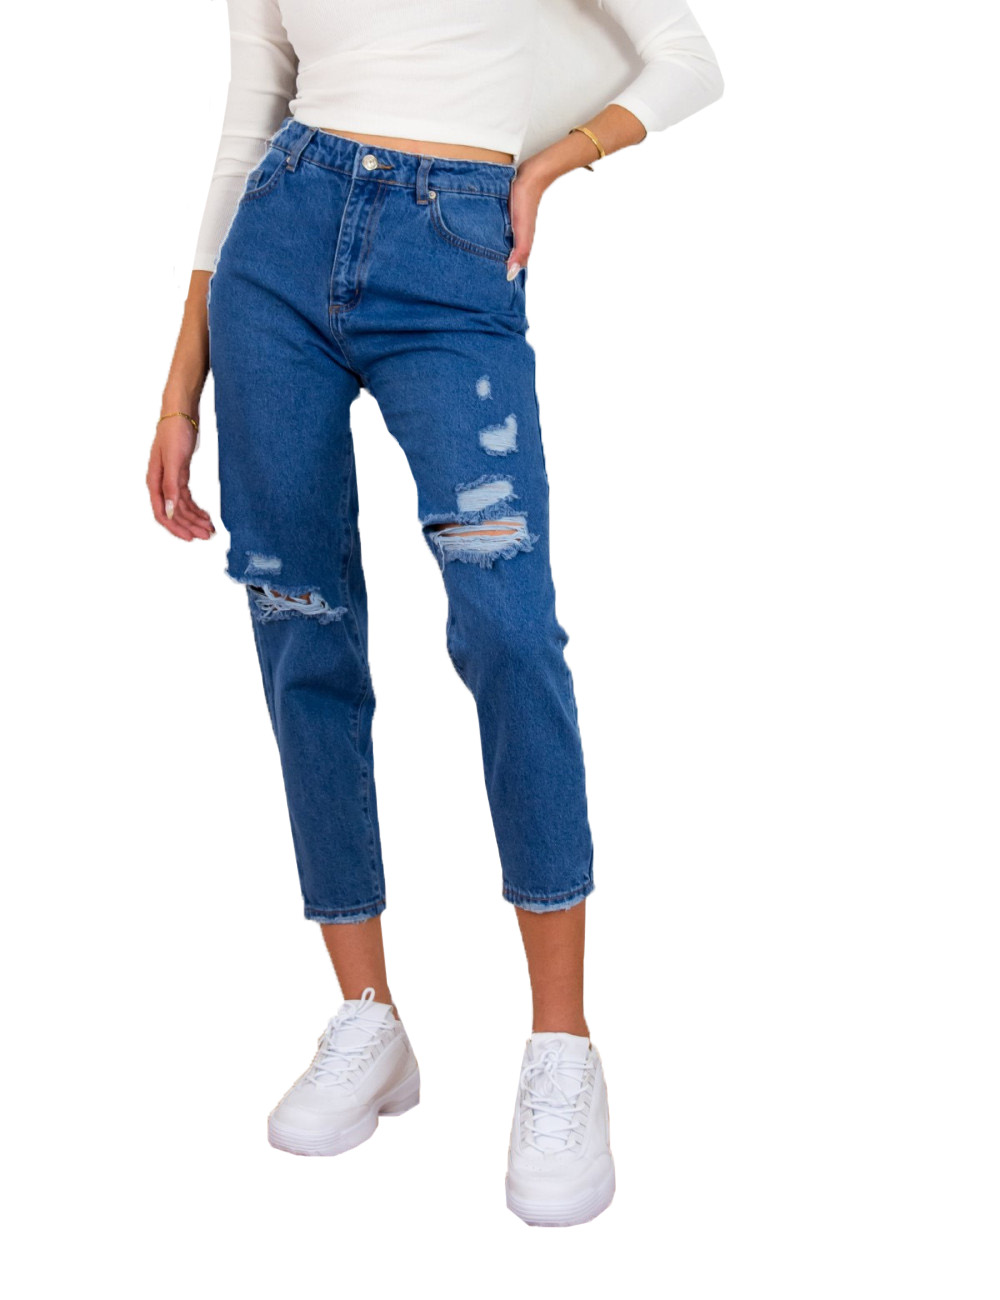 Γυναικείο μπλε ανοιχτό τζιν παντελόνι Boyfriend σκισίματα LY5616